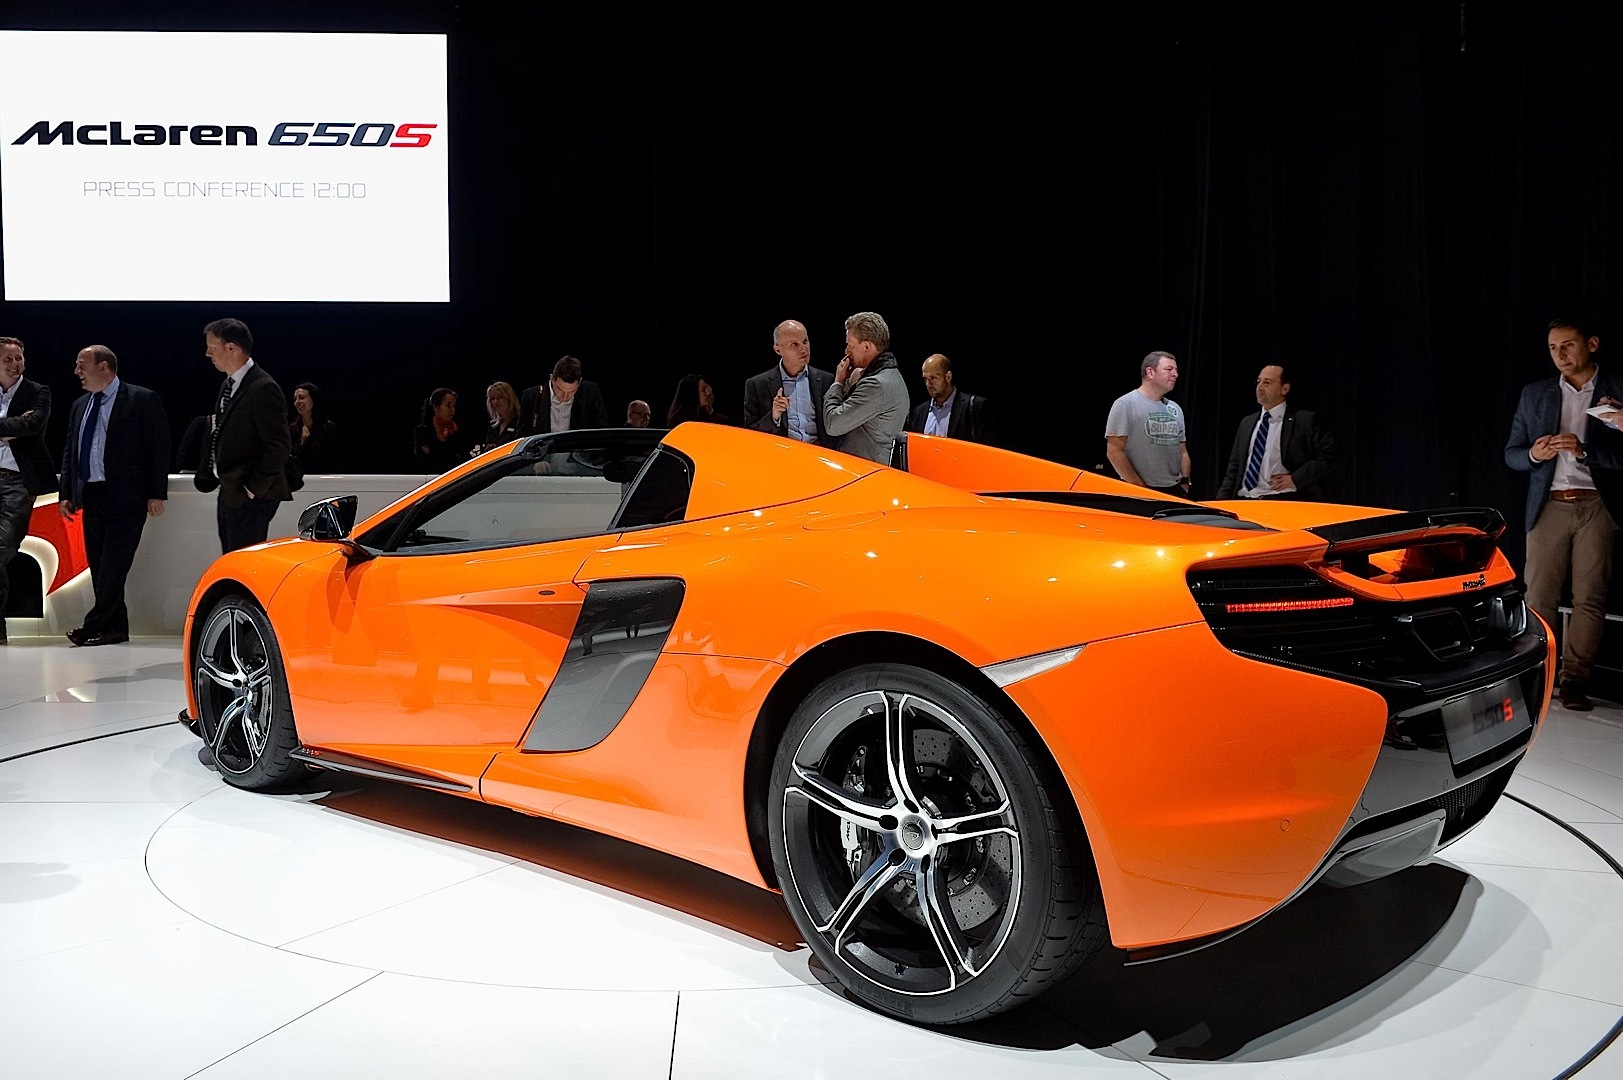 McLaren 650S, 650S Spider Debut in Geneva, Configurator Launched [Live